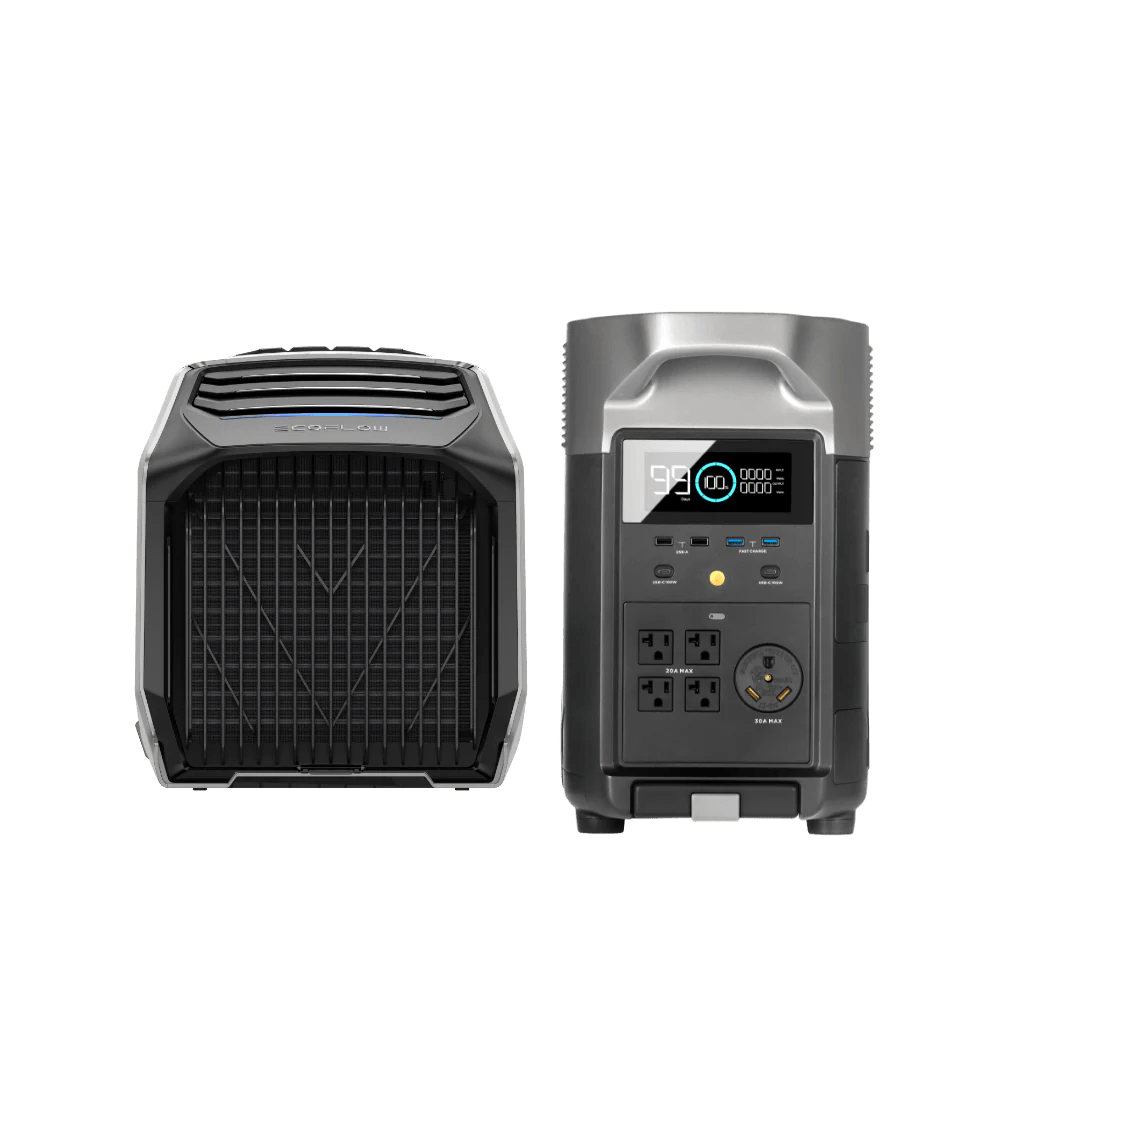 EcoFlow |WAVE 2 Portable Air Conditioner + DELTA Pro Power Station Bundle-EcoPowerit